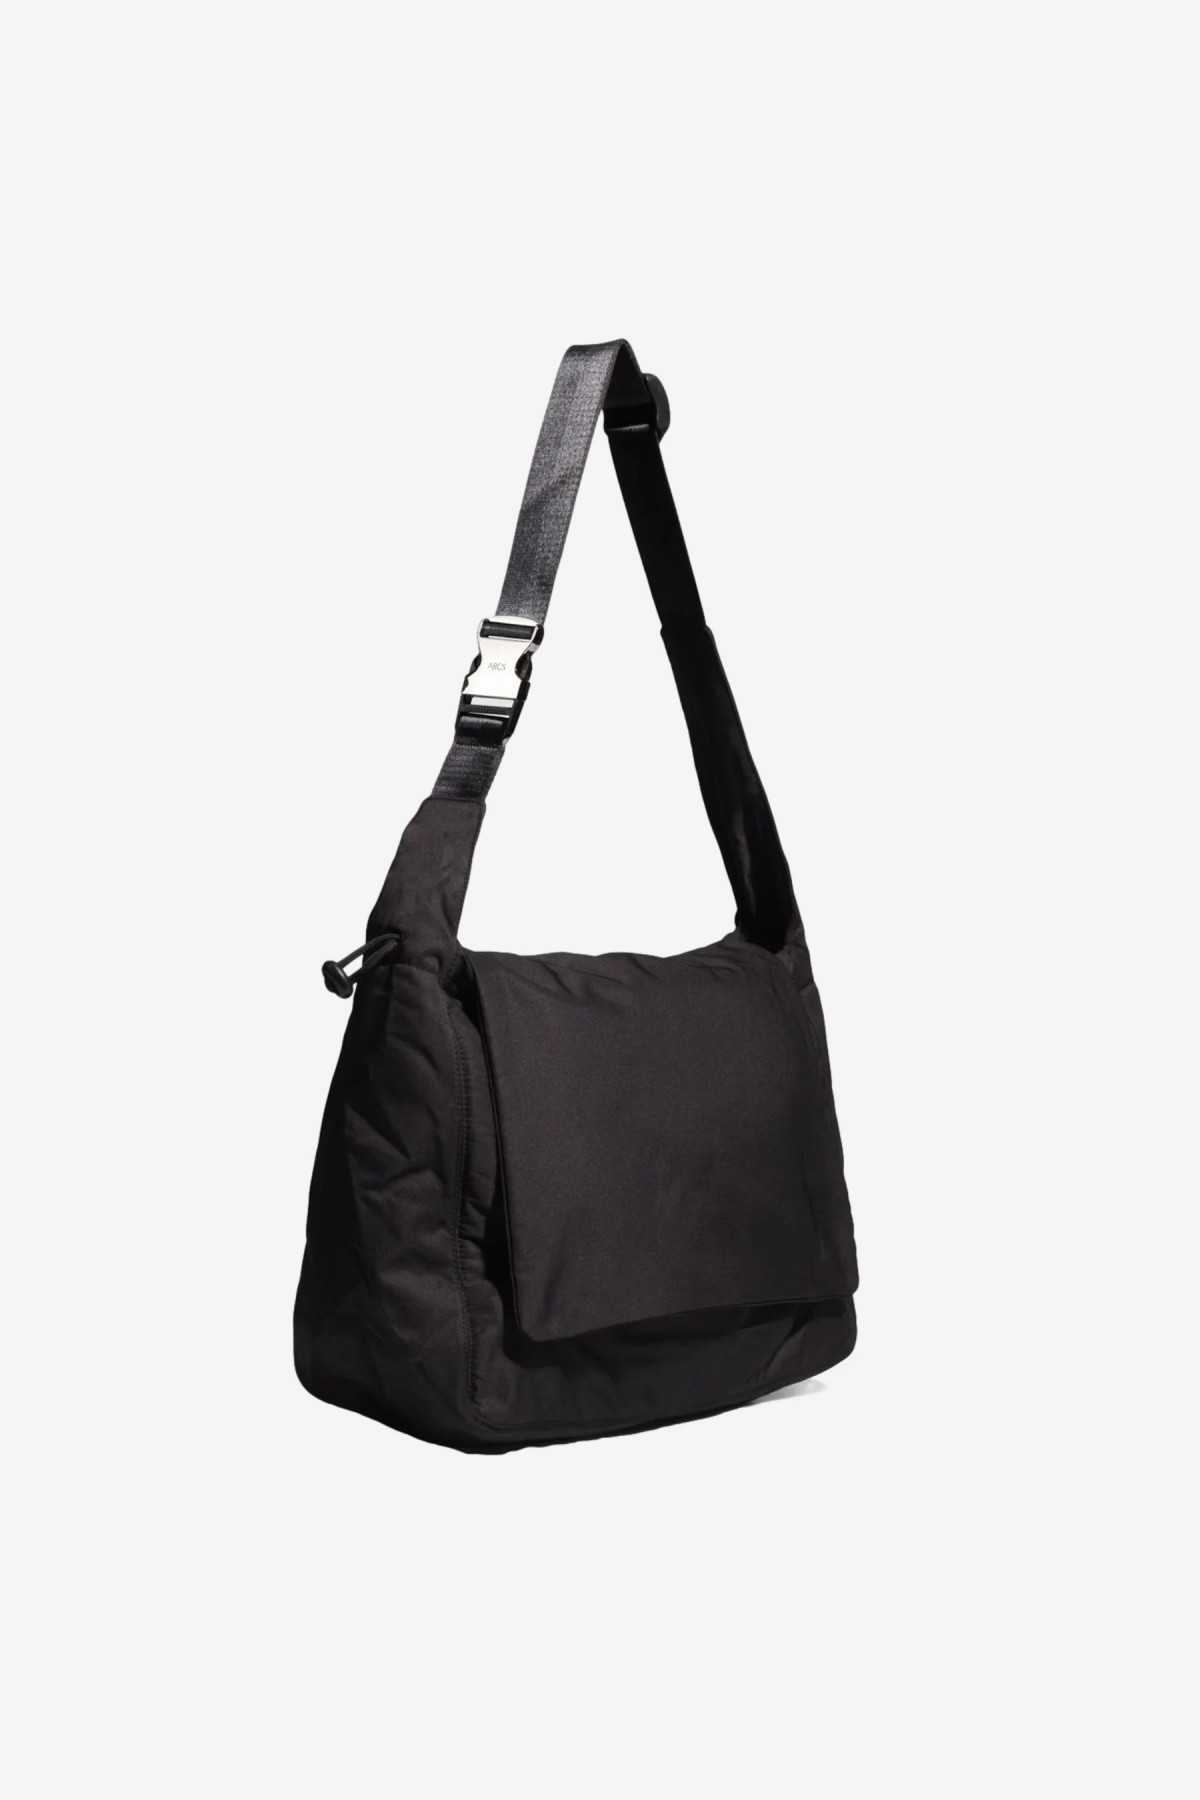 Arcs SUPER Messenger Bag in Black